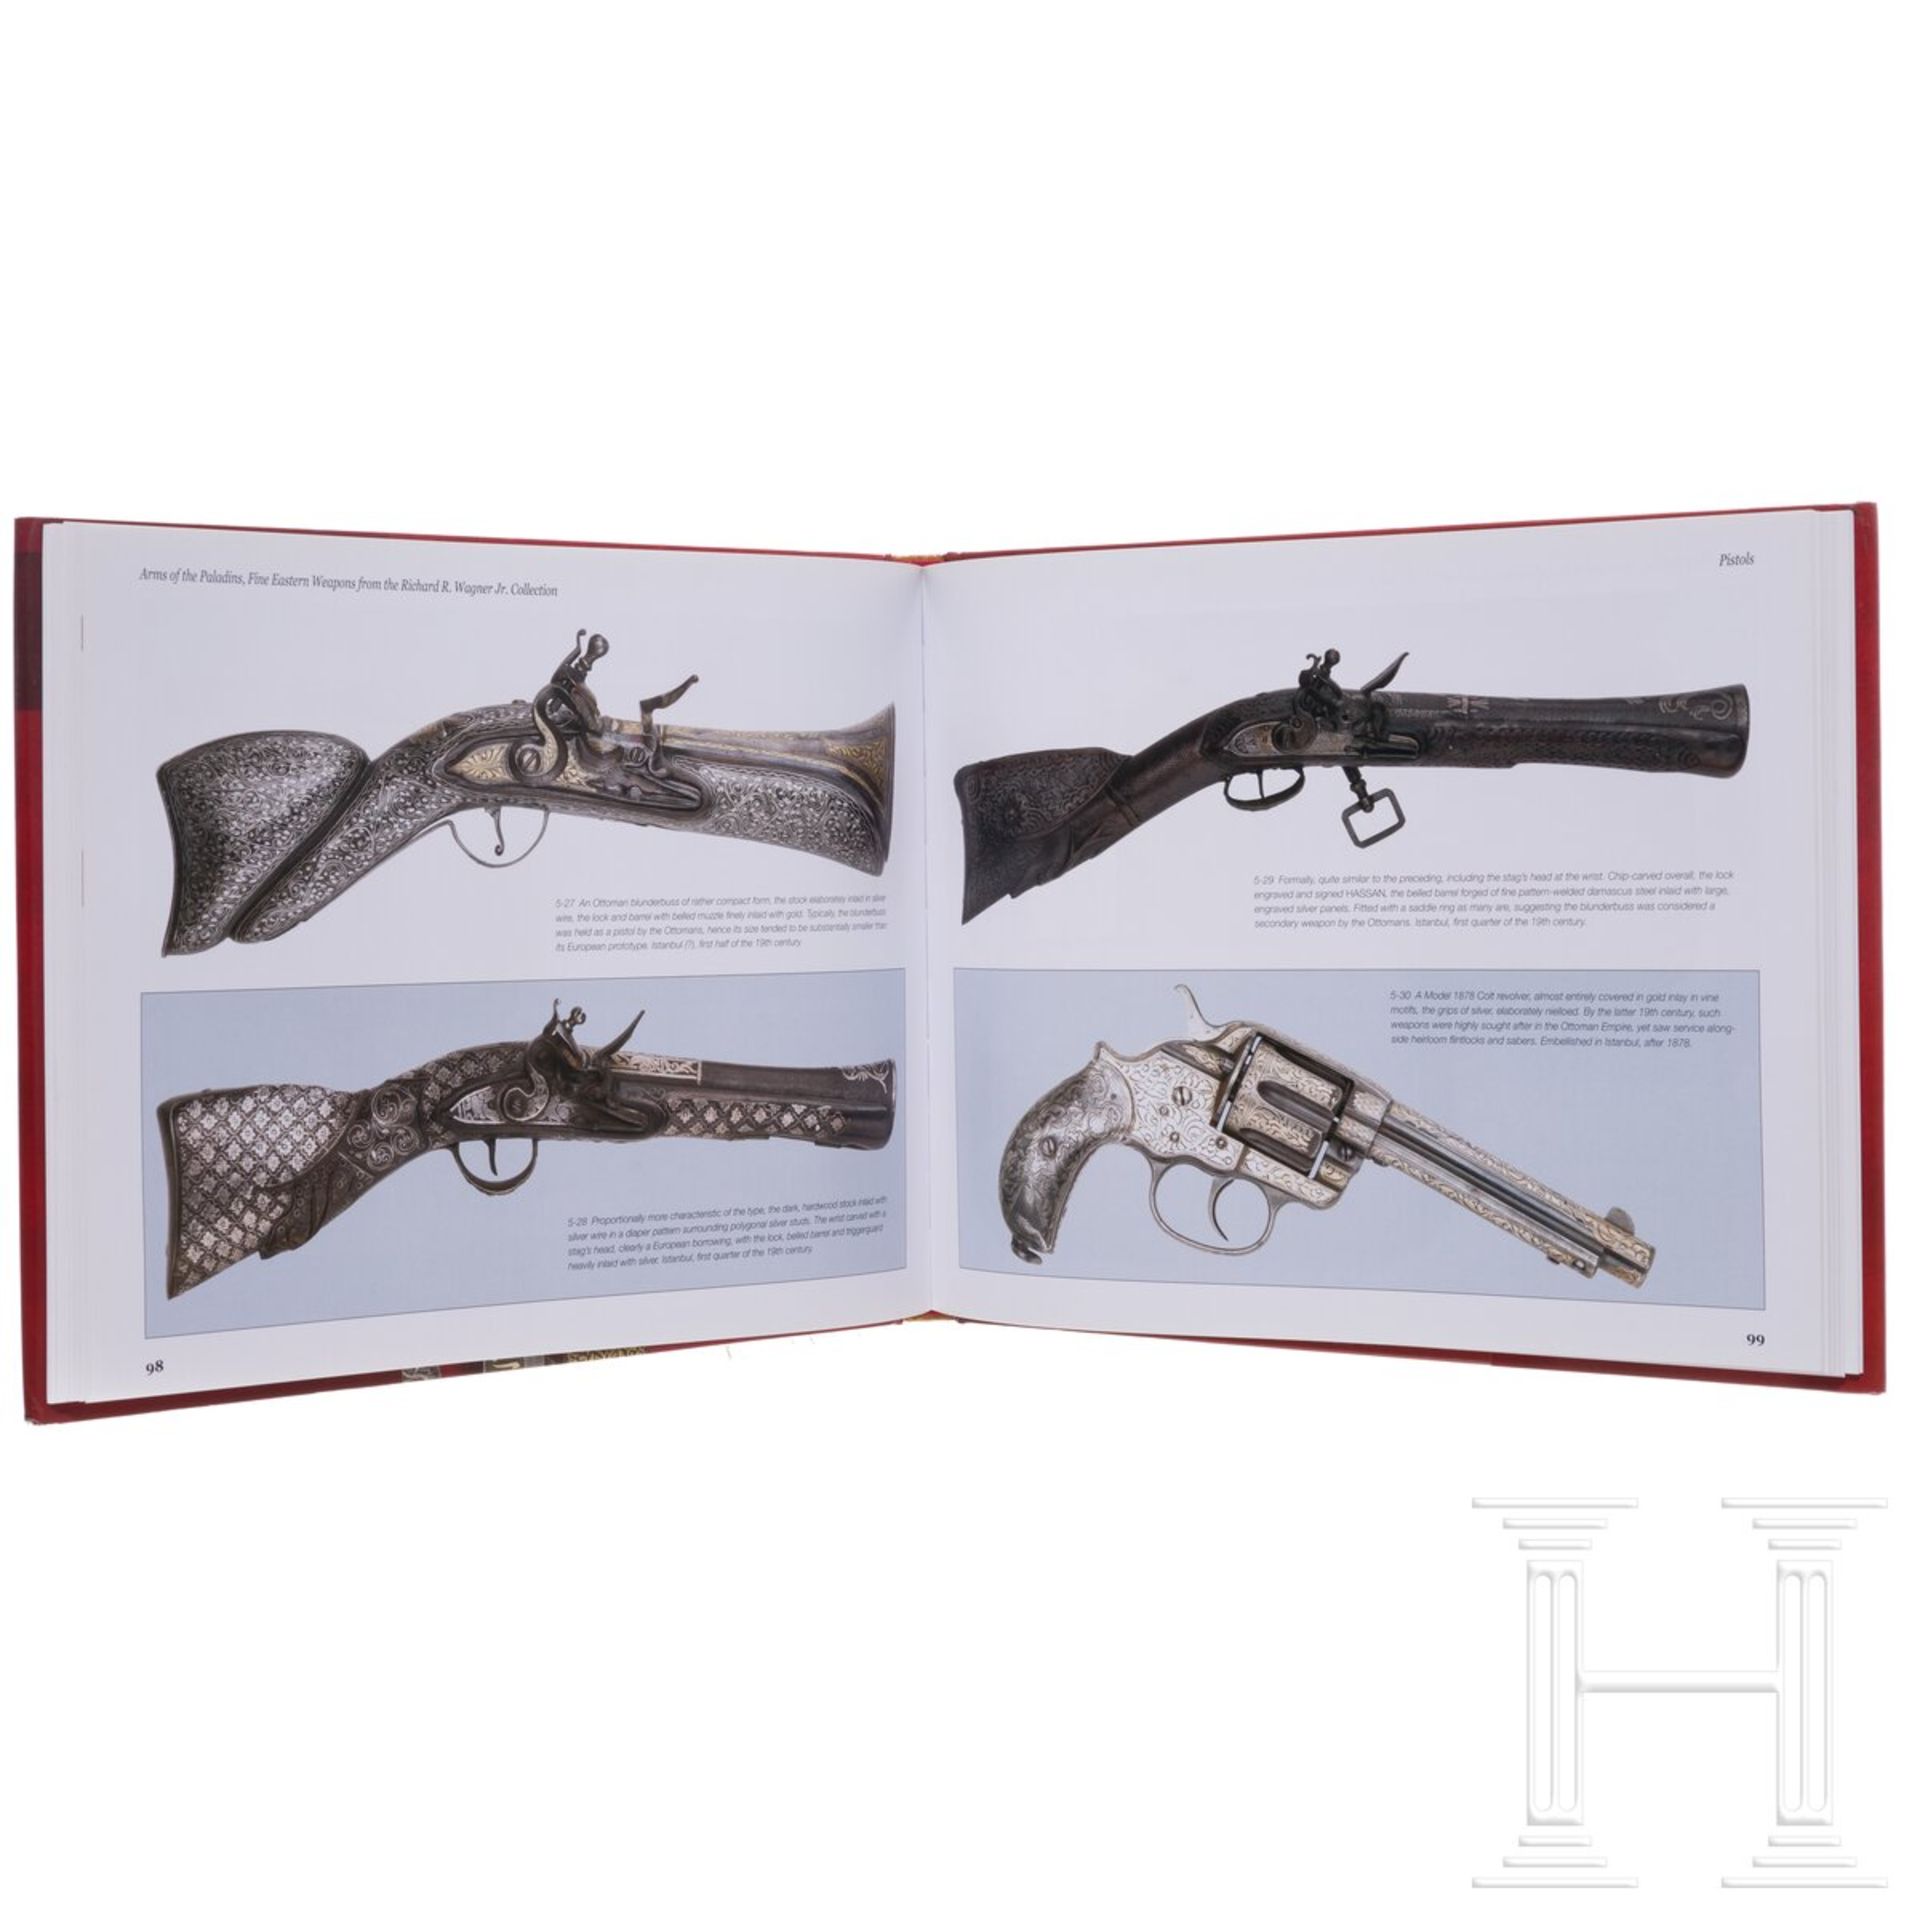 Sechs Bücher zum Thema orientalische Waffen und Kunst - Image 11 of 11